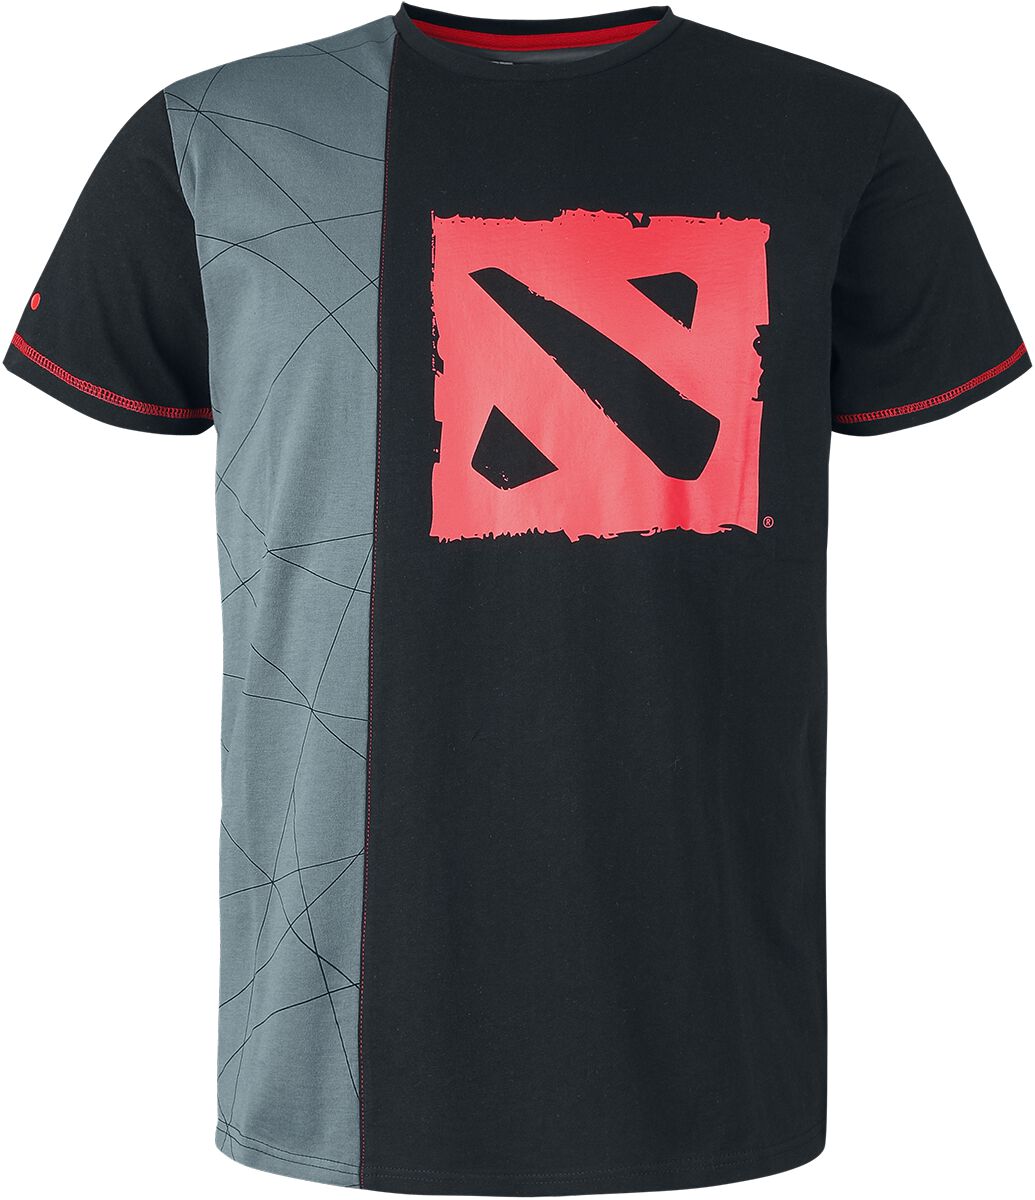 DOTA 2 - Gaming T-Shirt - Team Up - S bis L - für Männer - Größe S - schwarz/grau  - EMP exklusives Merchandise!